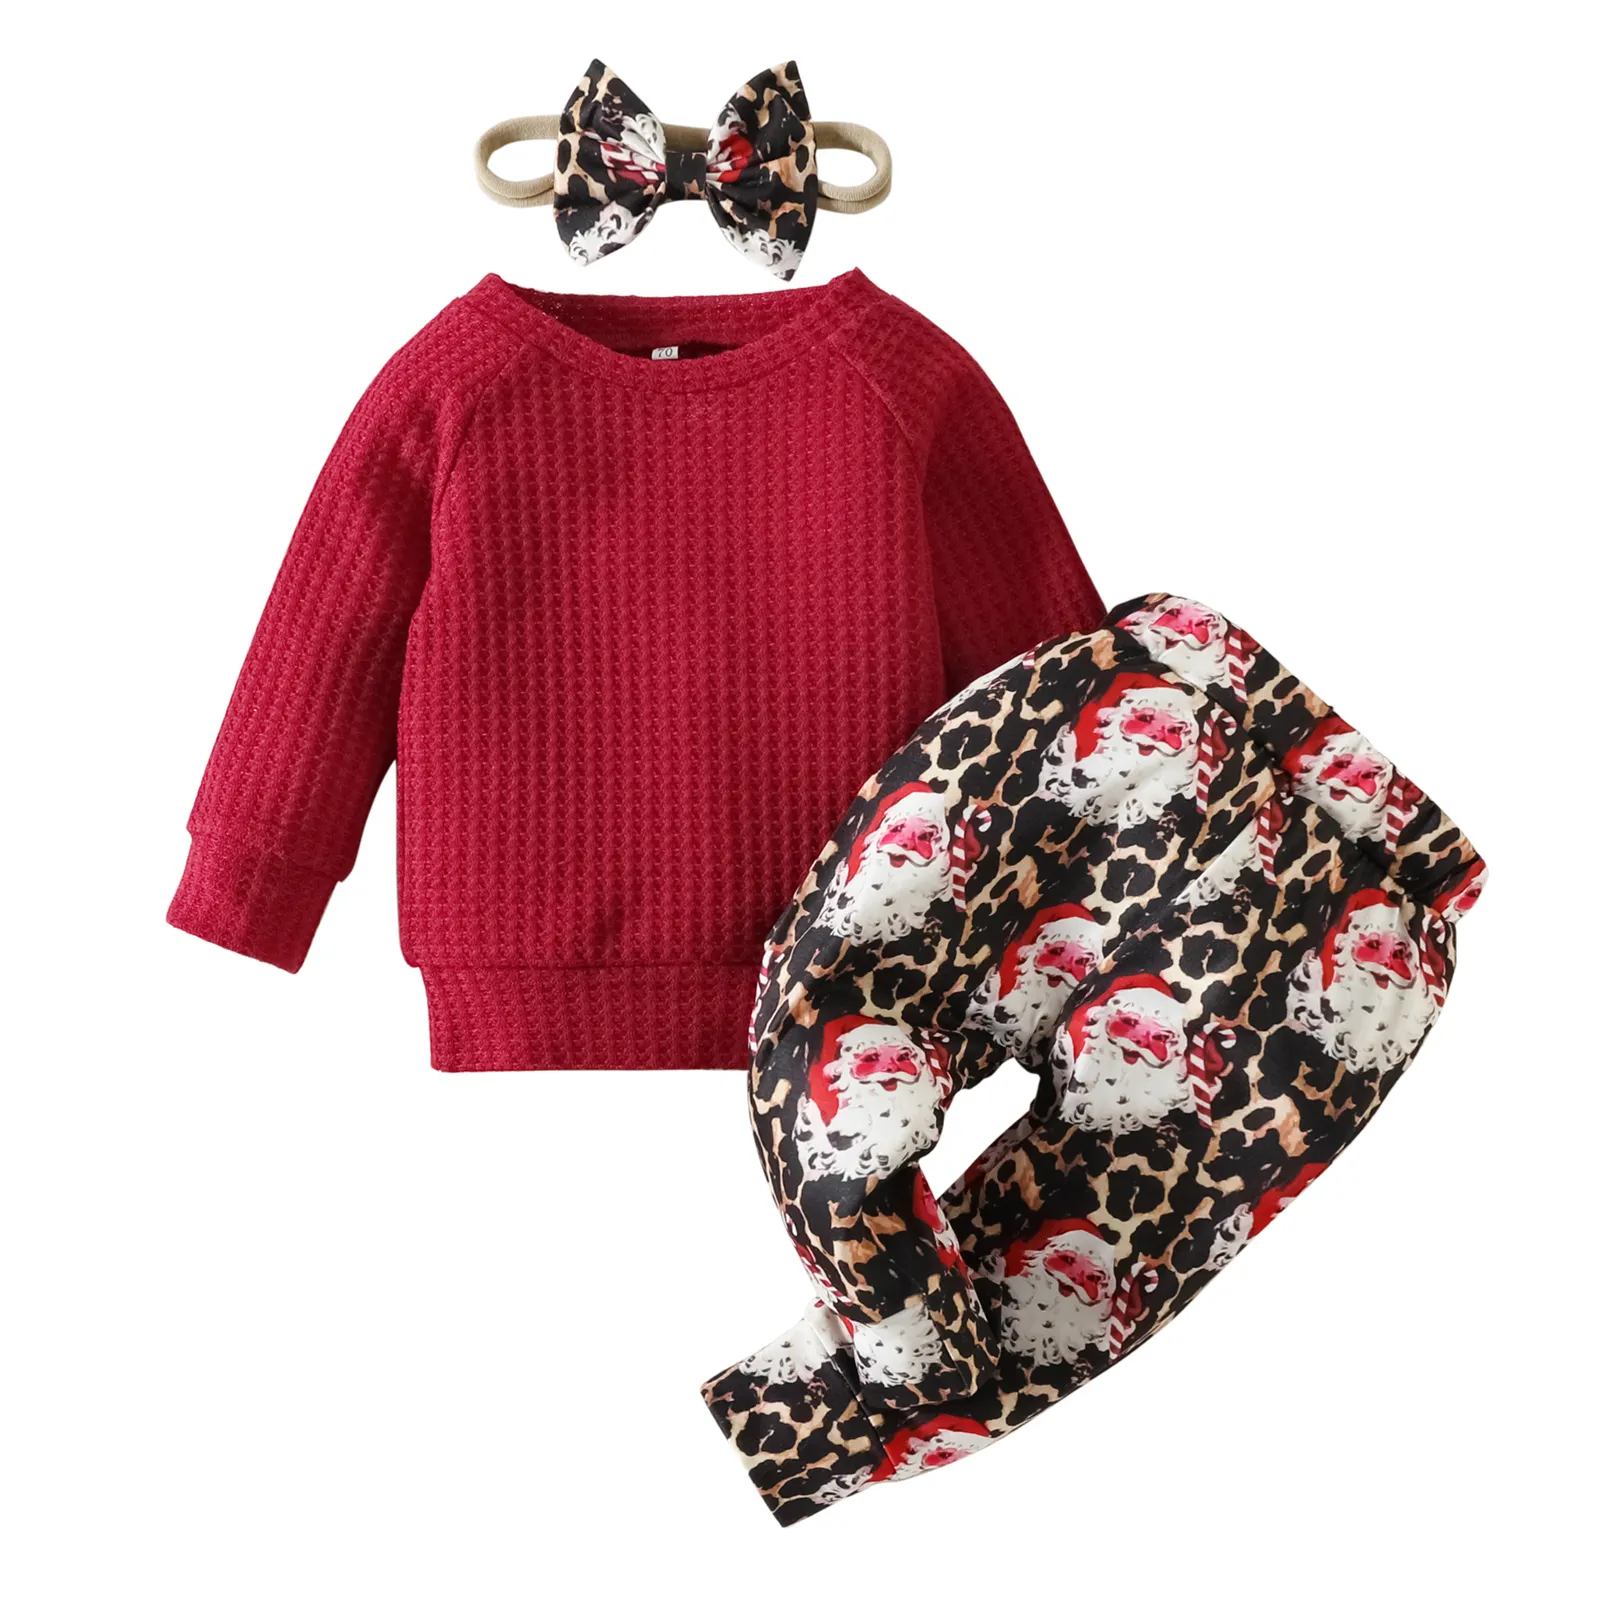 Crianças Vestuário Kid Natal Pijama Meninas Top e Plissado Calças Boutique Outfit Conjuntos de Roupas Do Bebê Santa 9157